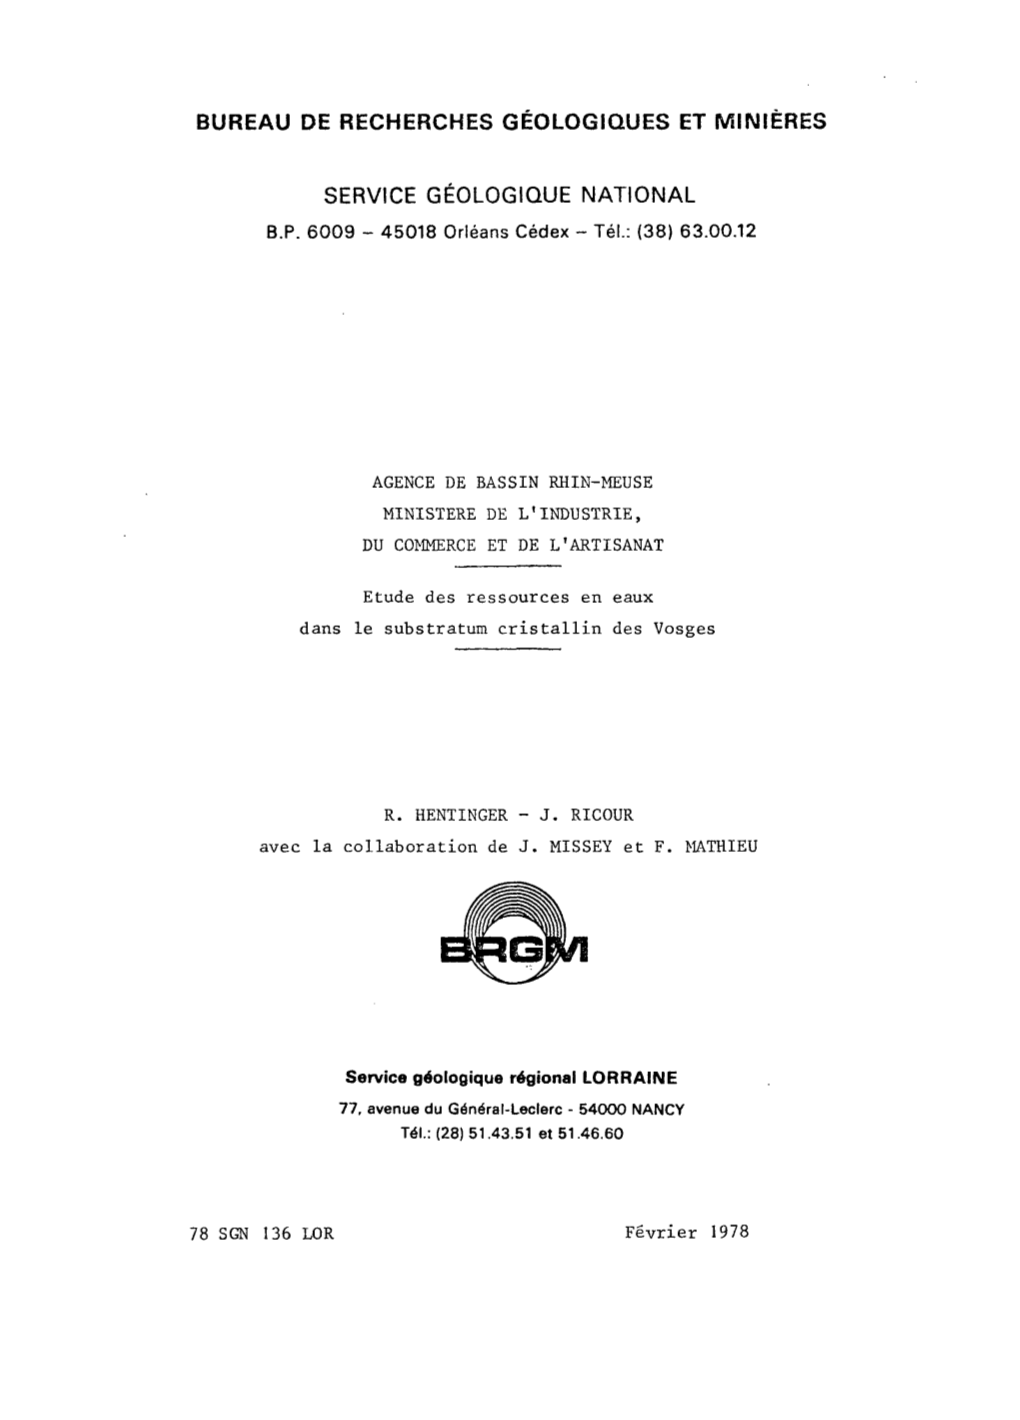 Rapport BRGM/78-SGN-136-LOR